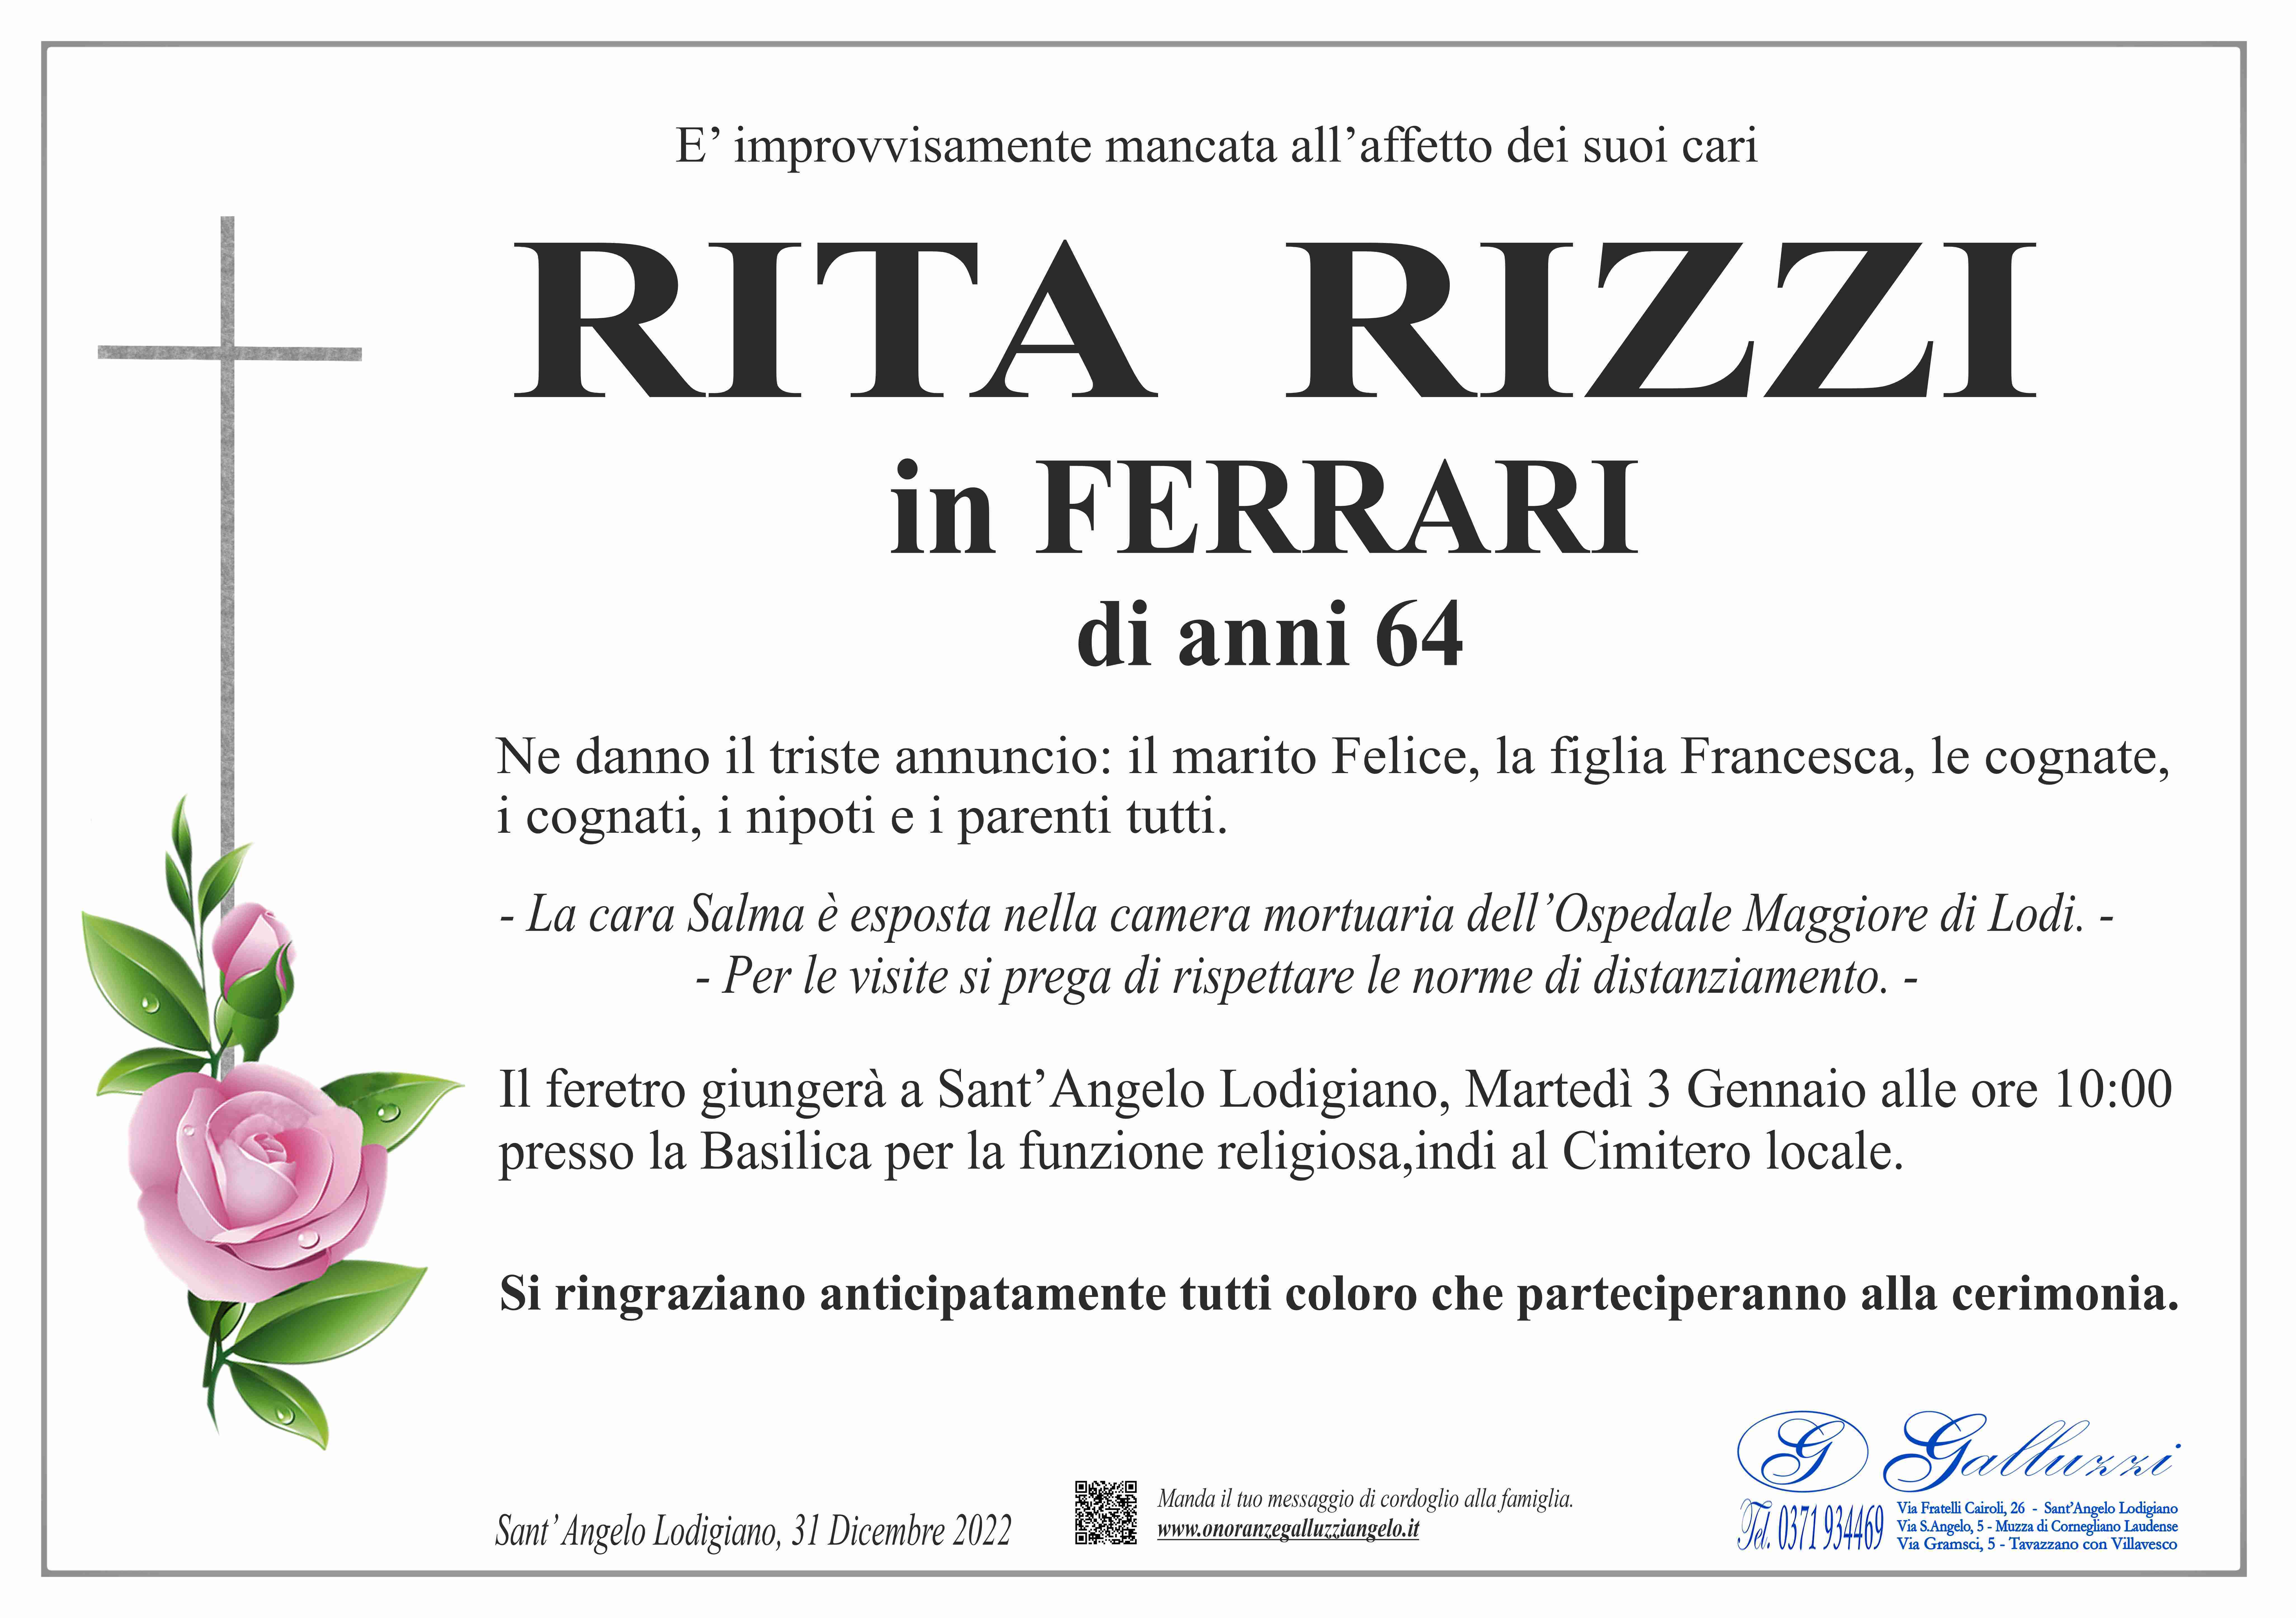 Rita Rizzi